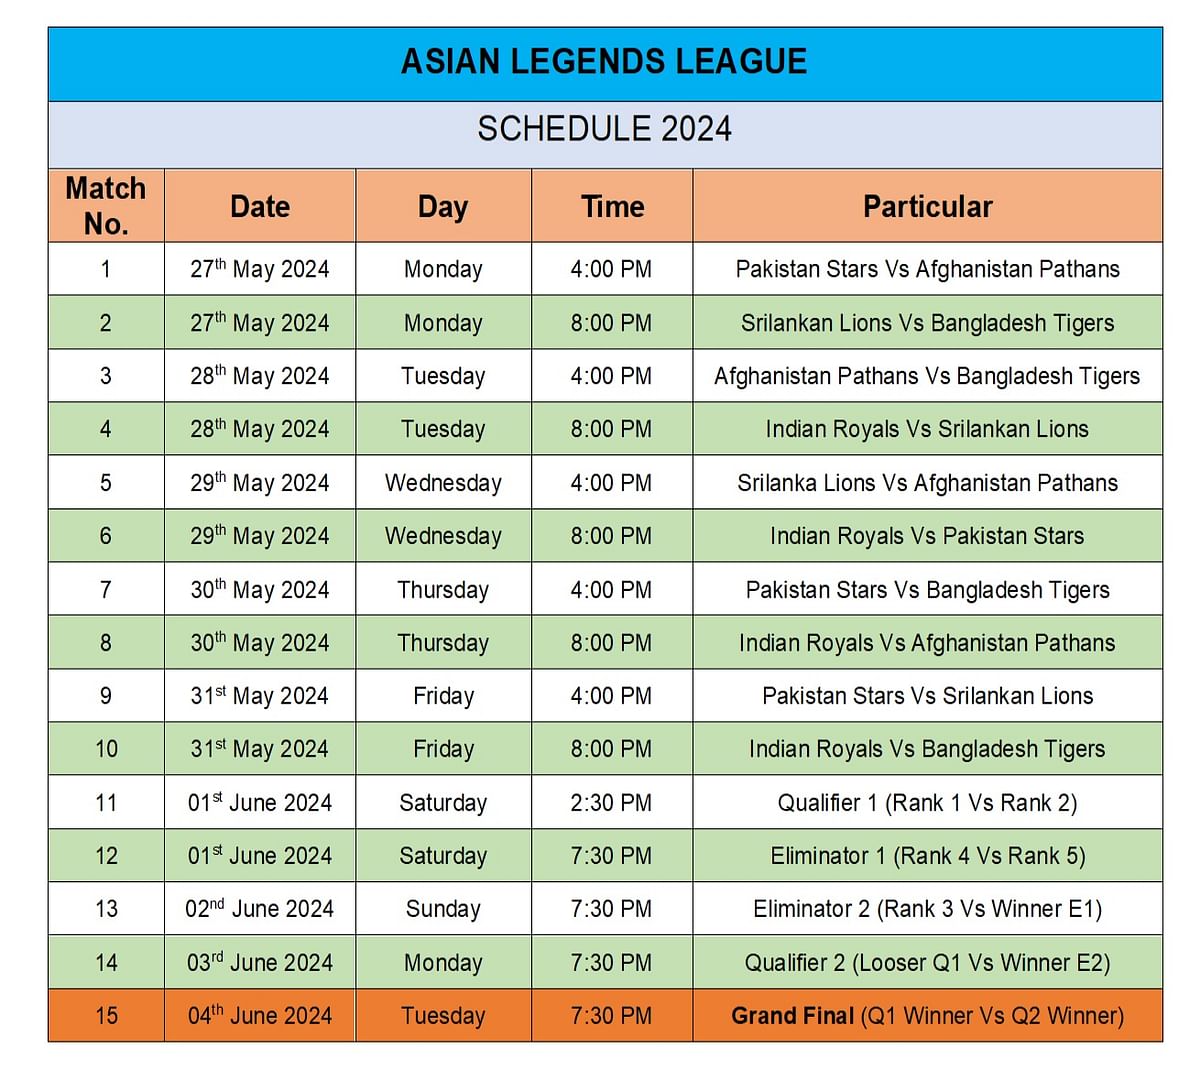 Asian Legends League's schedule